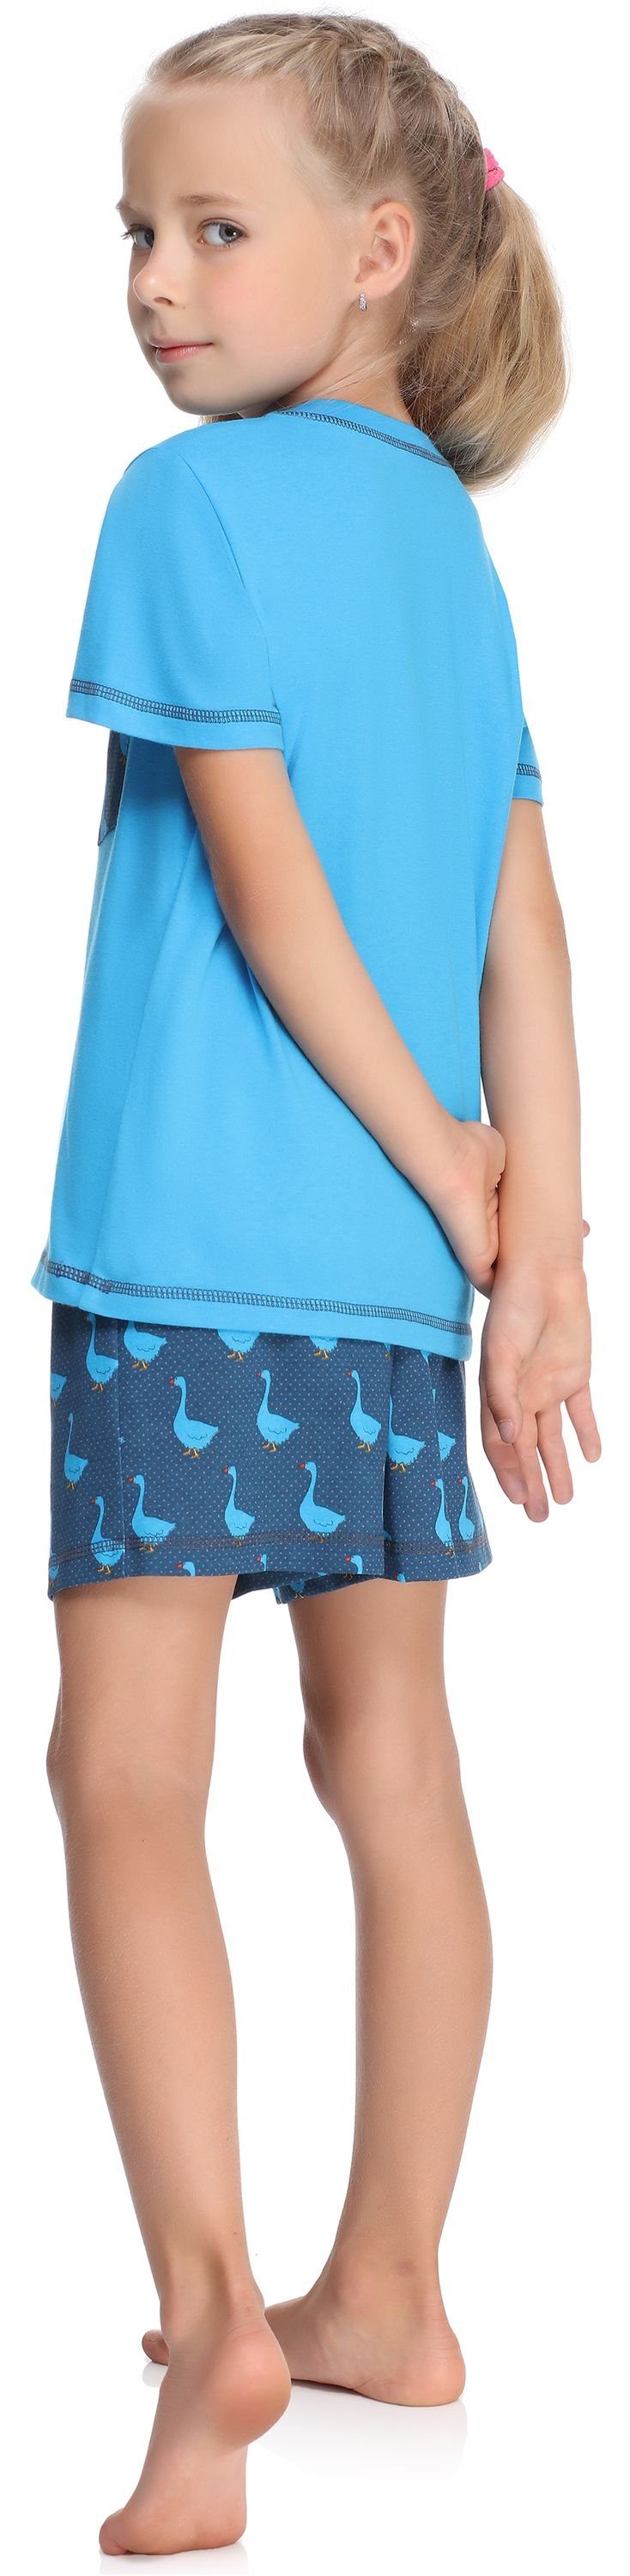 Schlafanzug Baumwolle aus Merry Set Mädchen MS10-292 Schlafanzüge Style Blau/Gans Kurz Pyjama